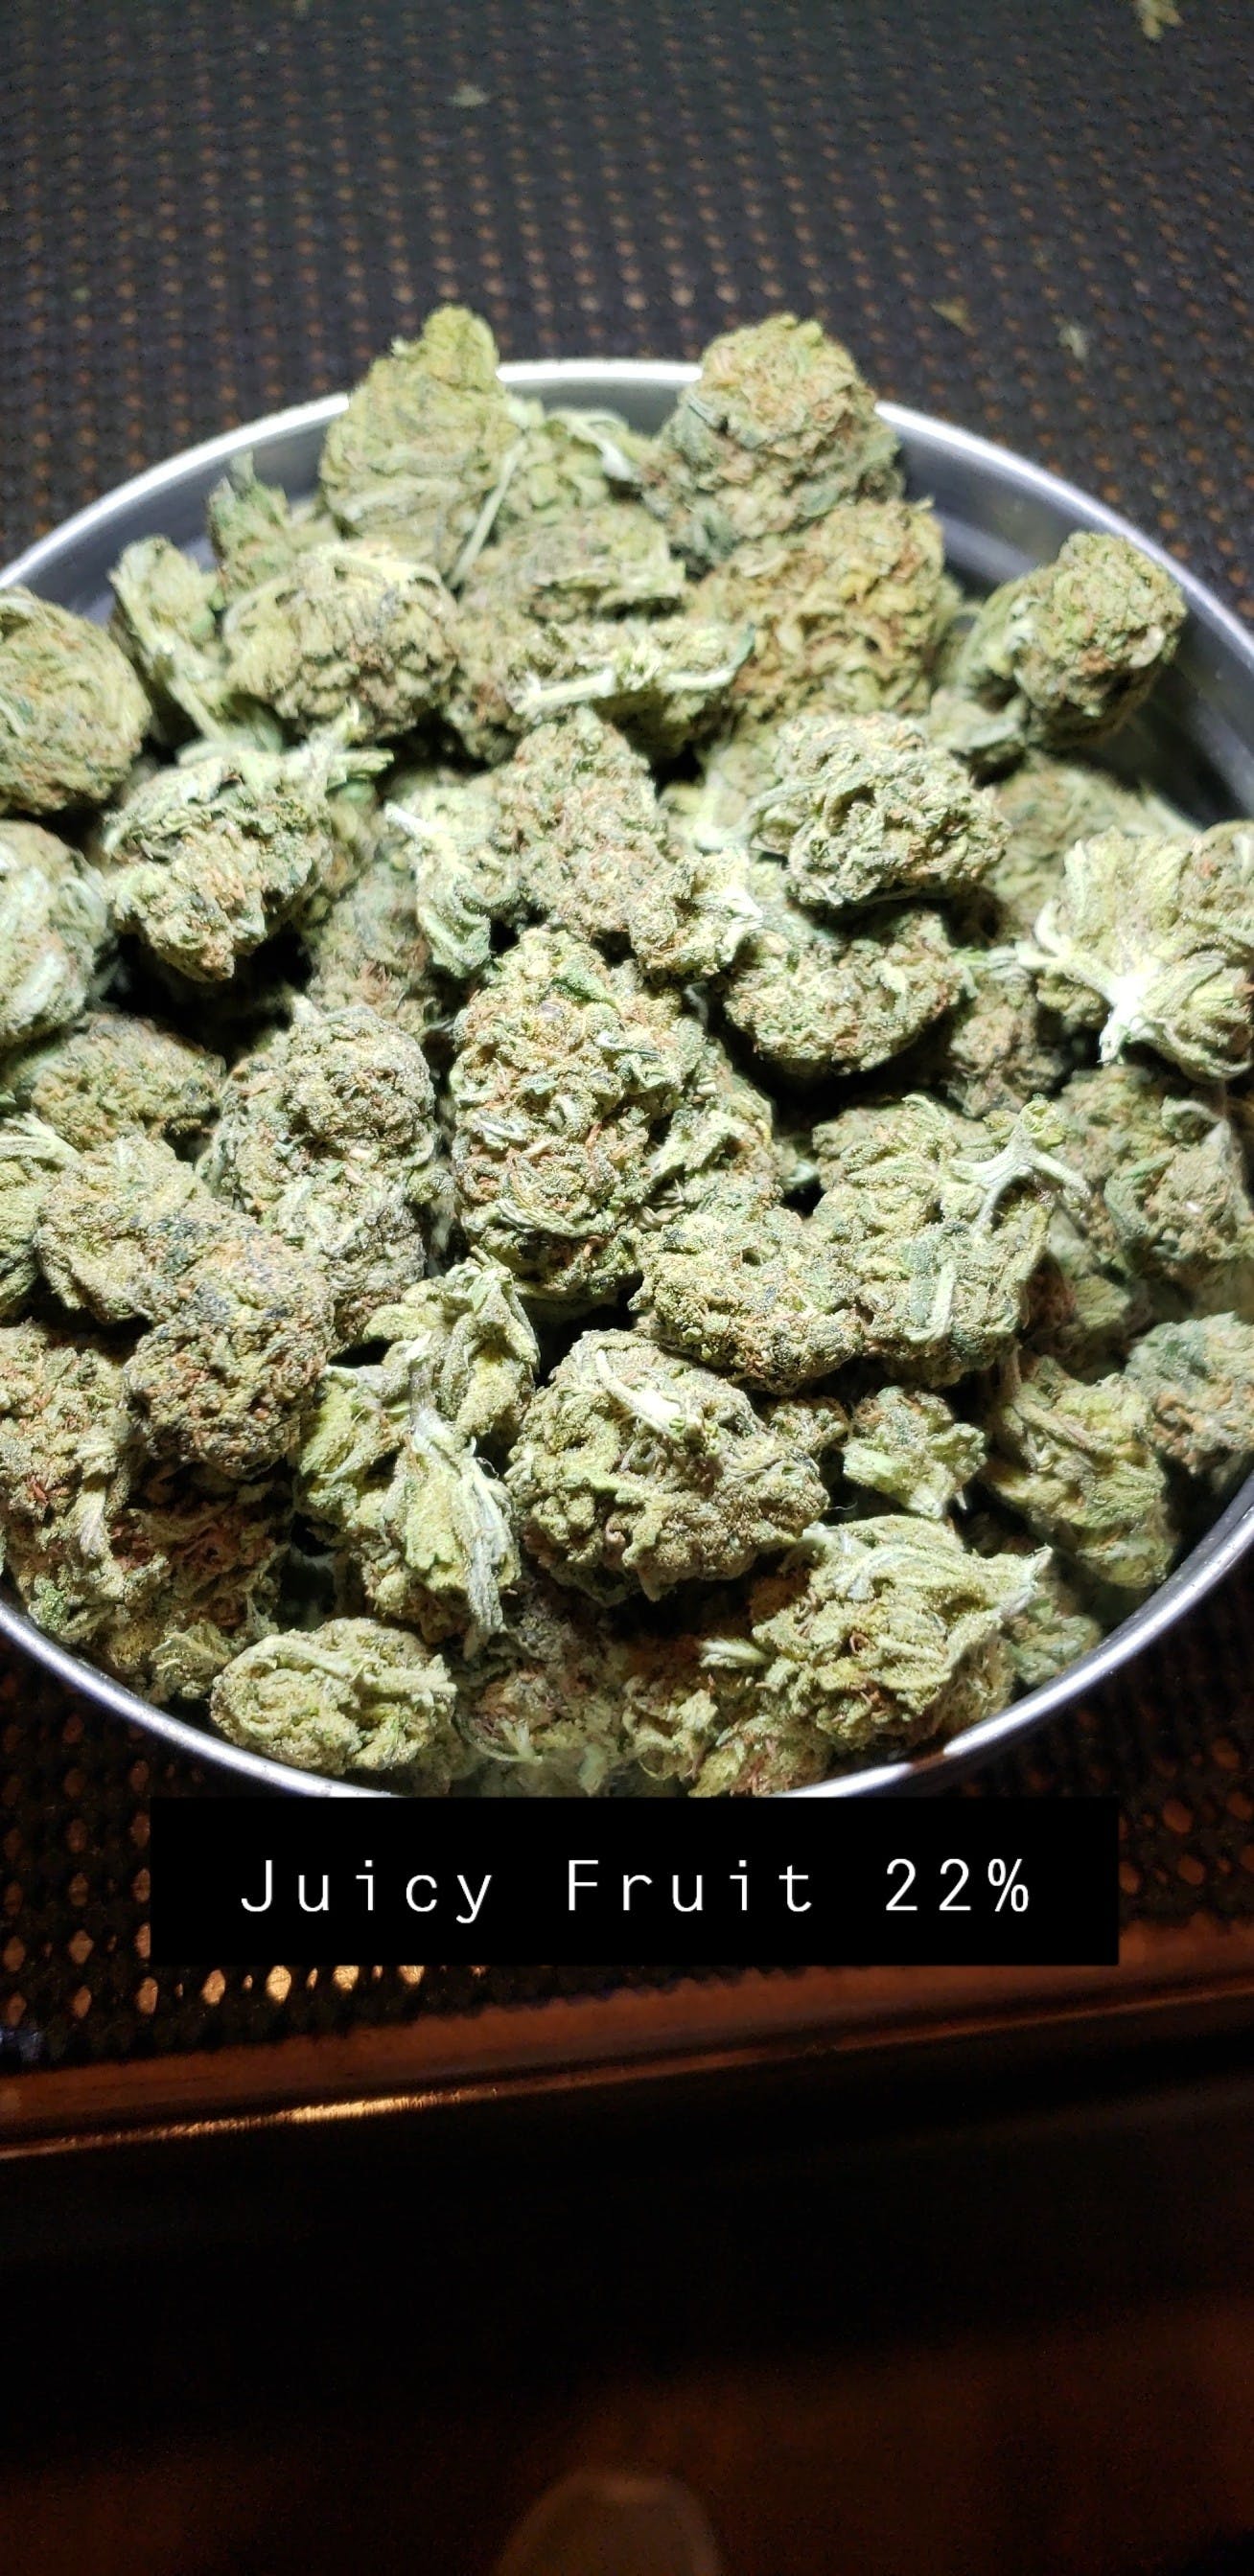 hybrid-juicy-fruit-22-25